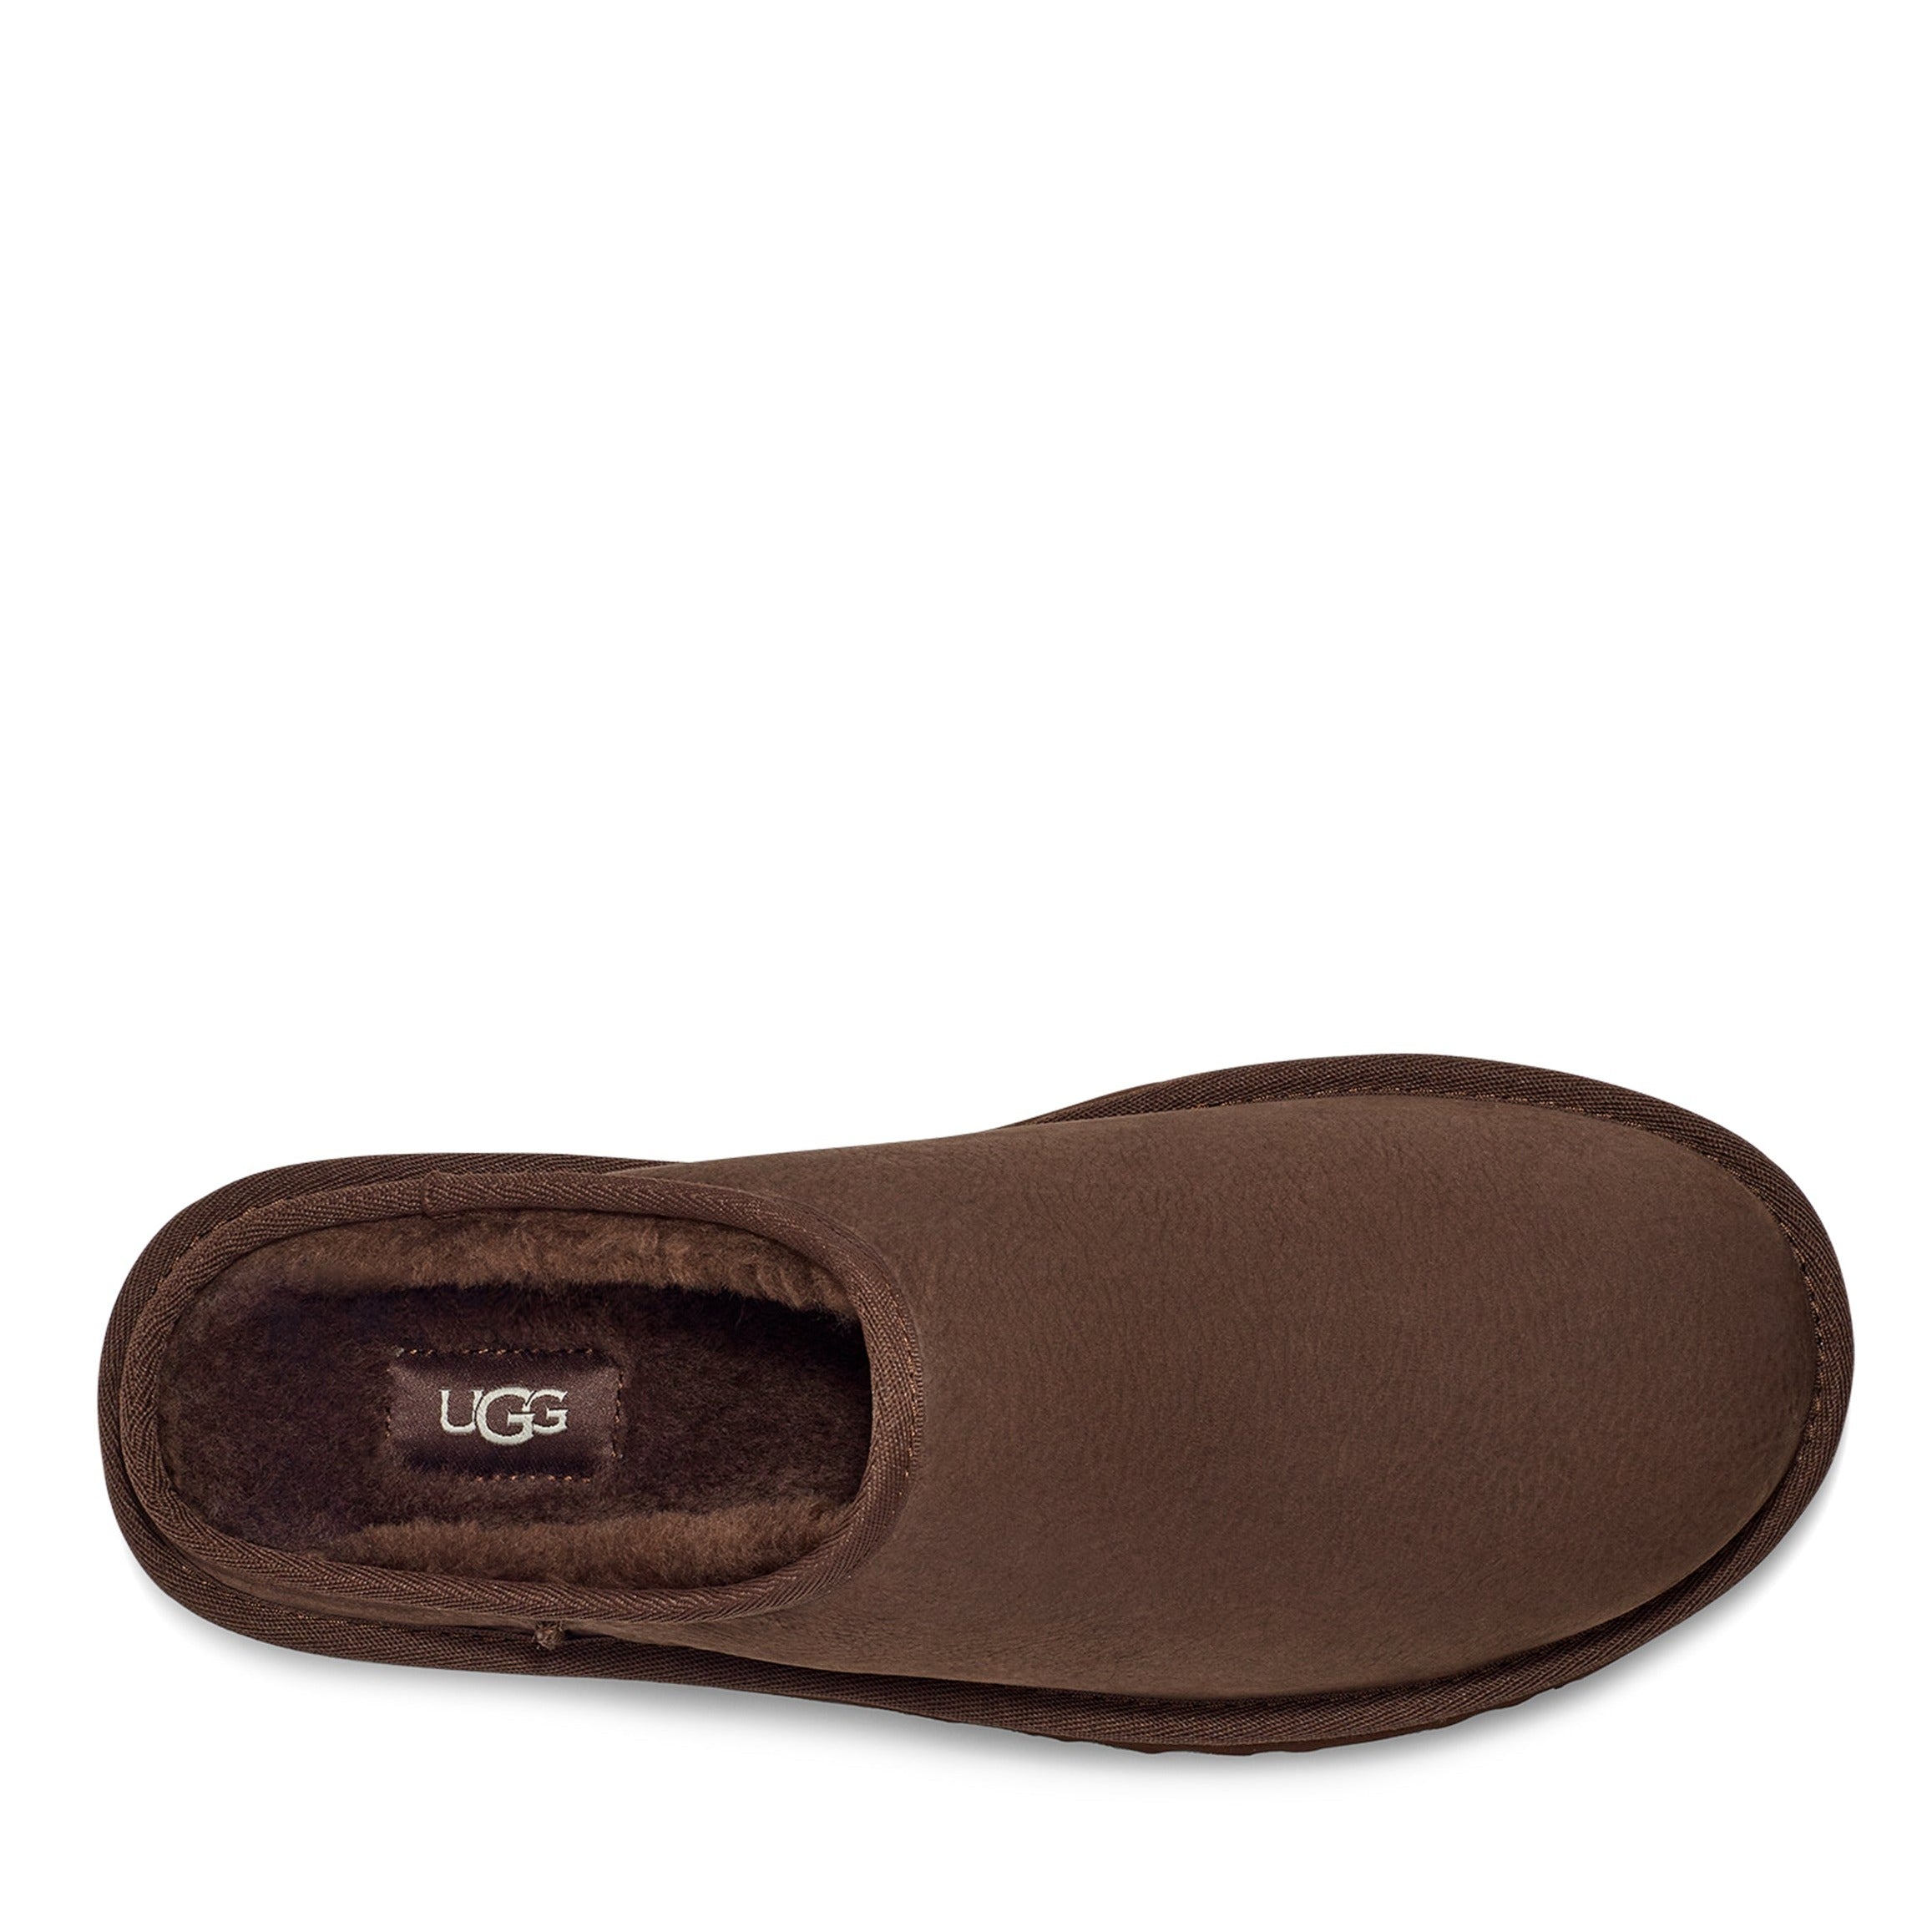 Sample UGG Classic Slip-On Slippers   